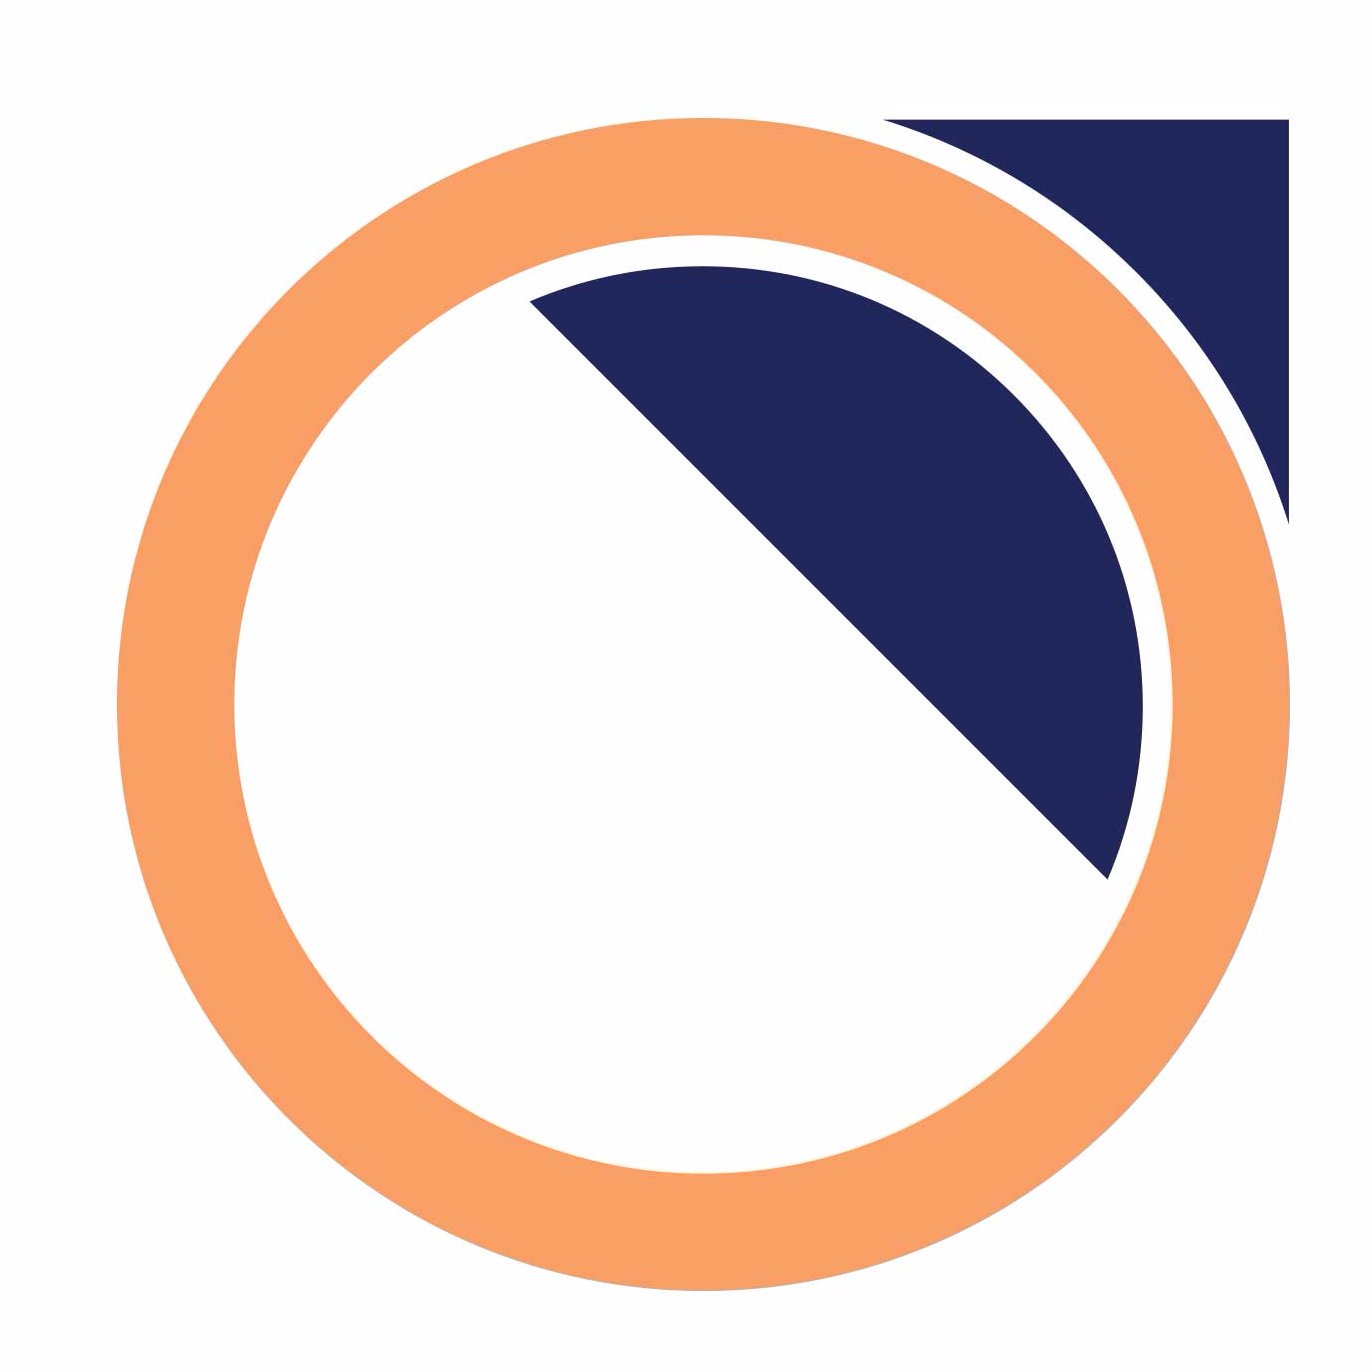 Baxter Blue logo